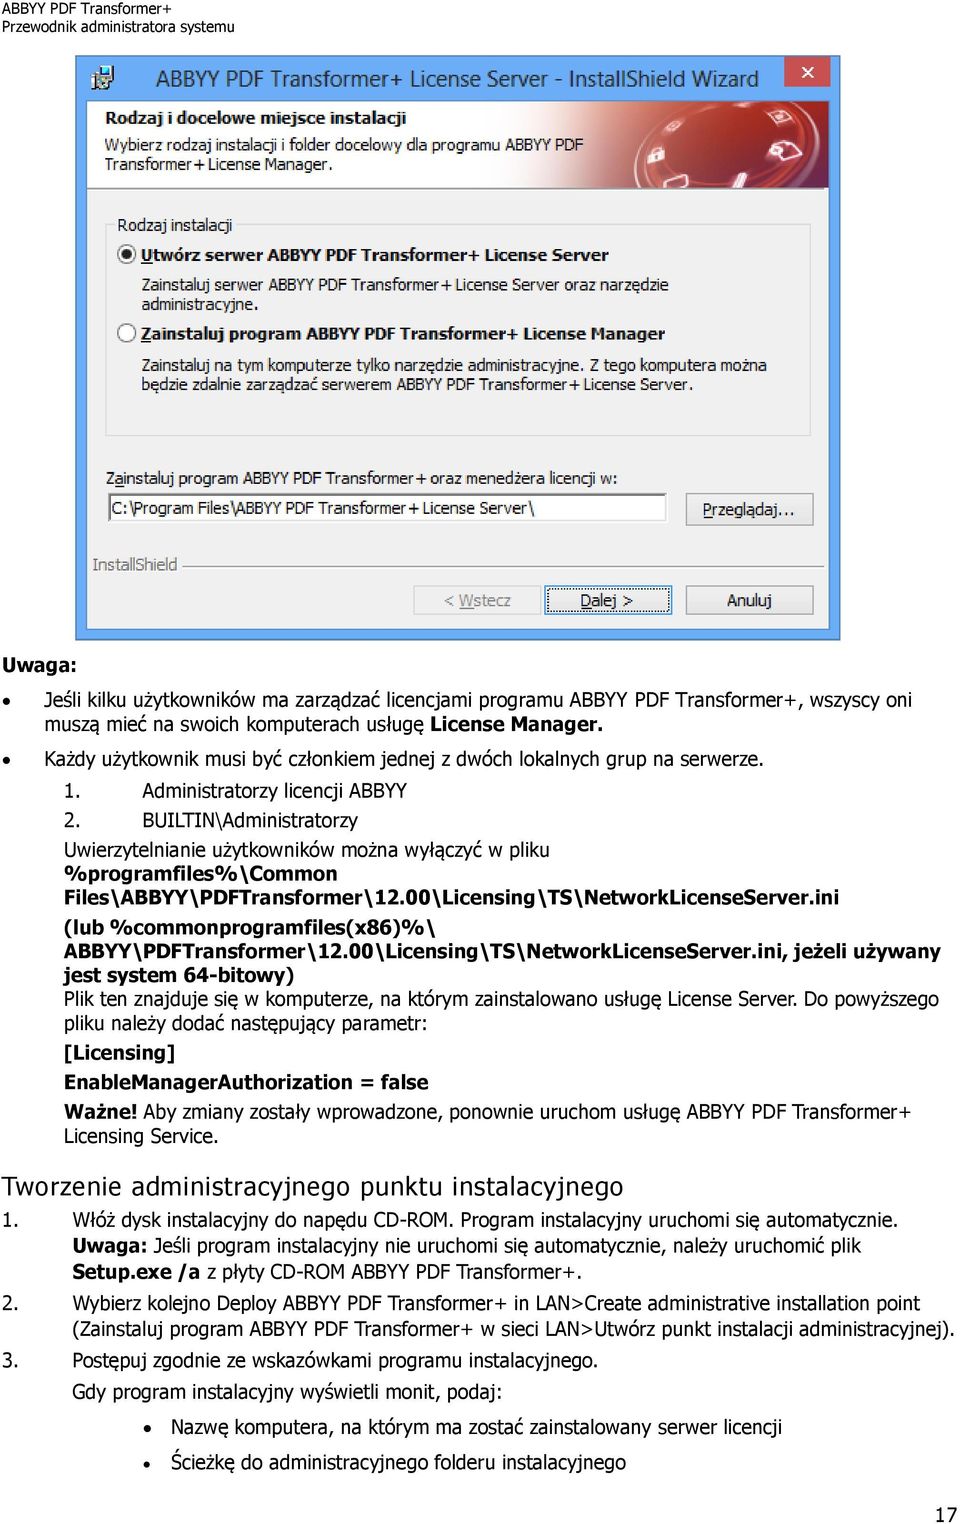 BUILTIN\Administratorzy Uwierzytelnianie użytkowników można wyłączyć w pliku %programfiles%\common Files\ABBYY\PDFTransformer\12.00\Licensing\TS\NetworkLicenseServer.